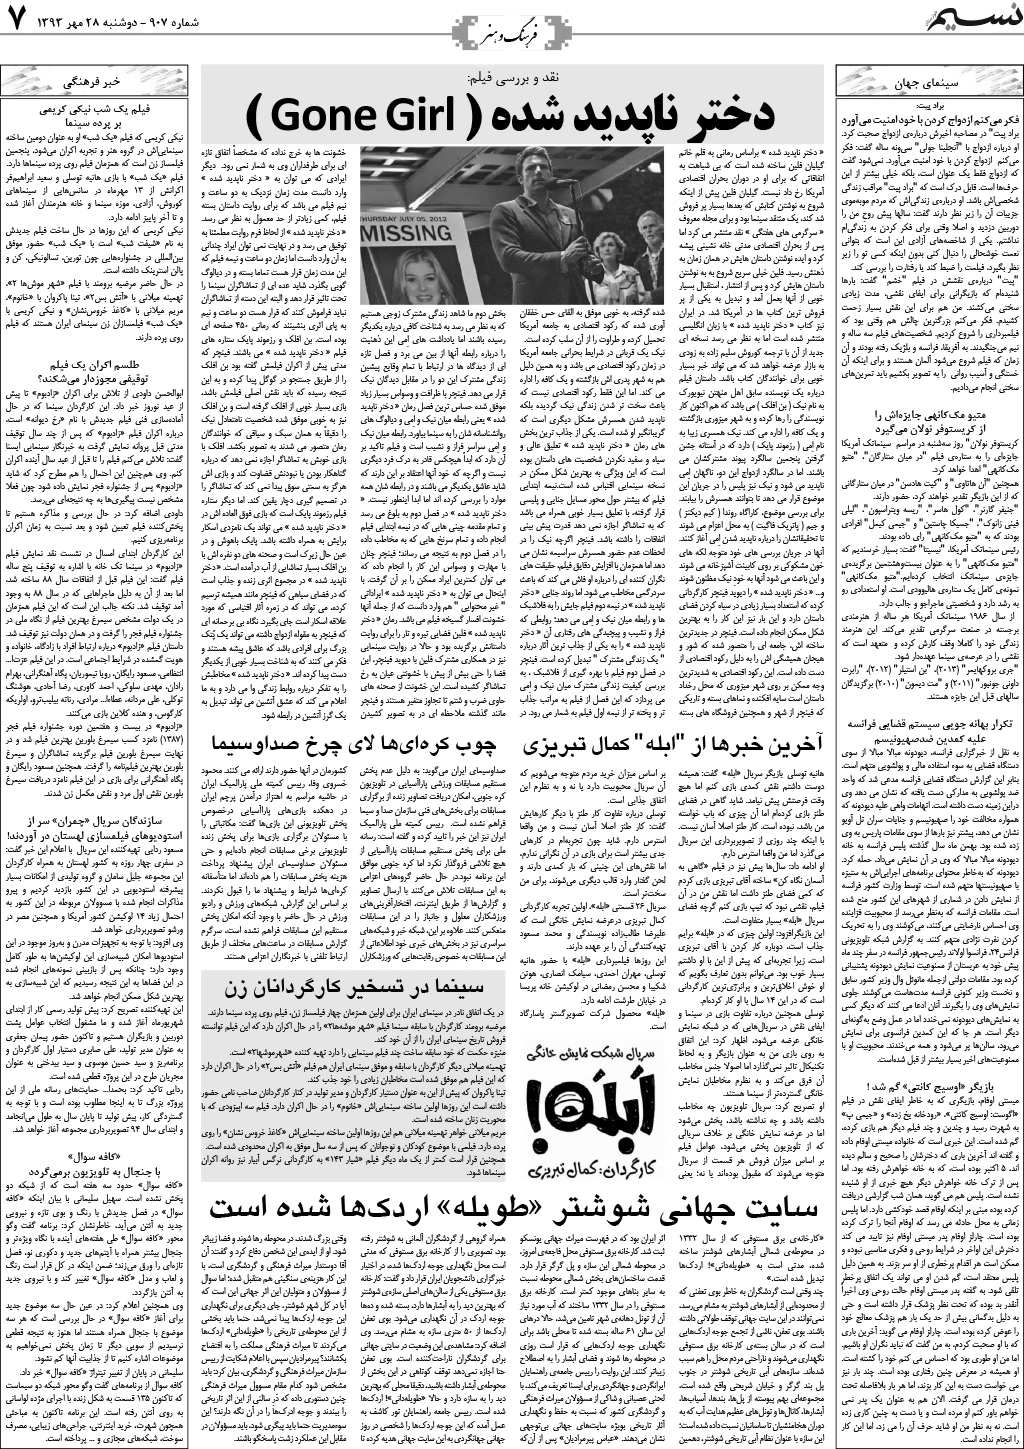 صفحه فرهنگ و هنر روزنامه نسیم شماره 907